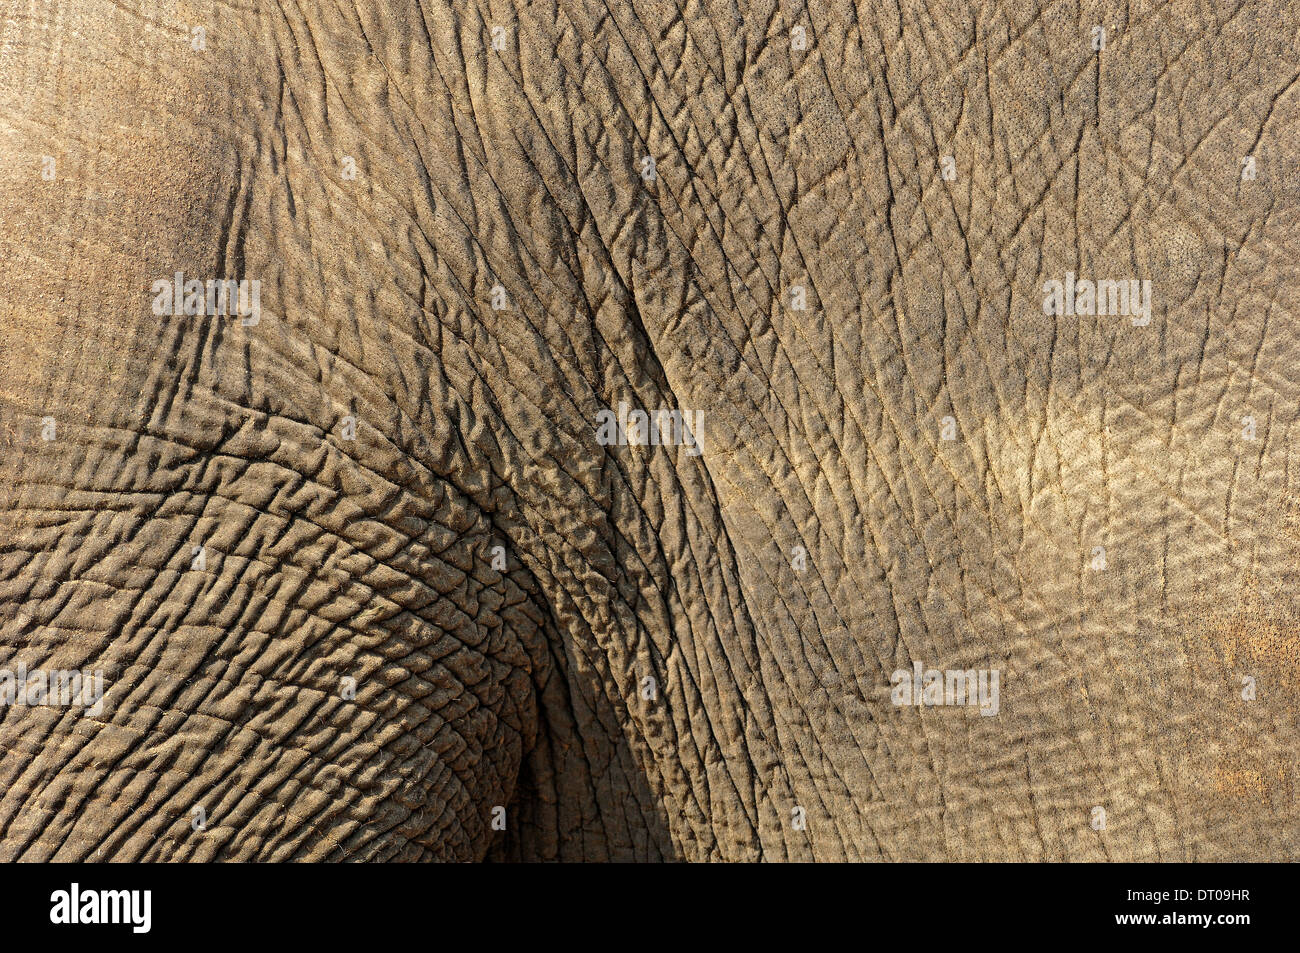 L'éléphant indien ou l'éléphant d'Asie (Elephas maximus), détail de la peau Banque D'Images